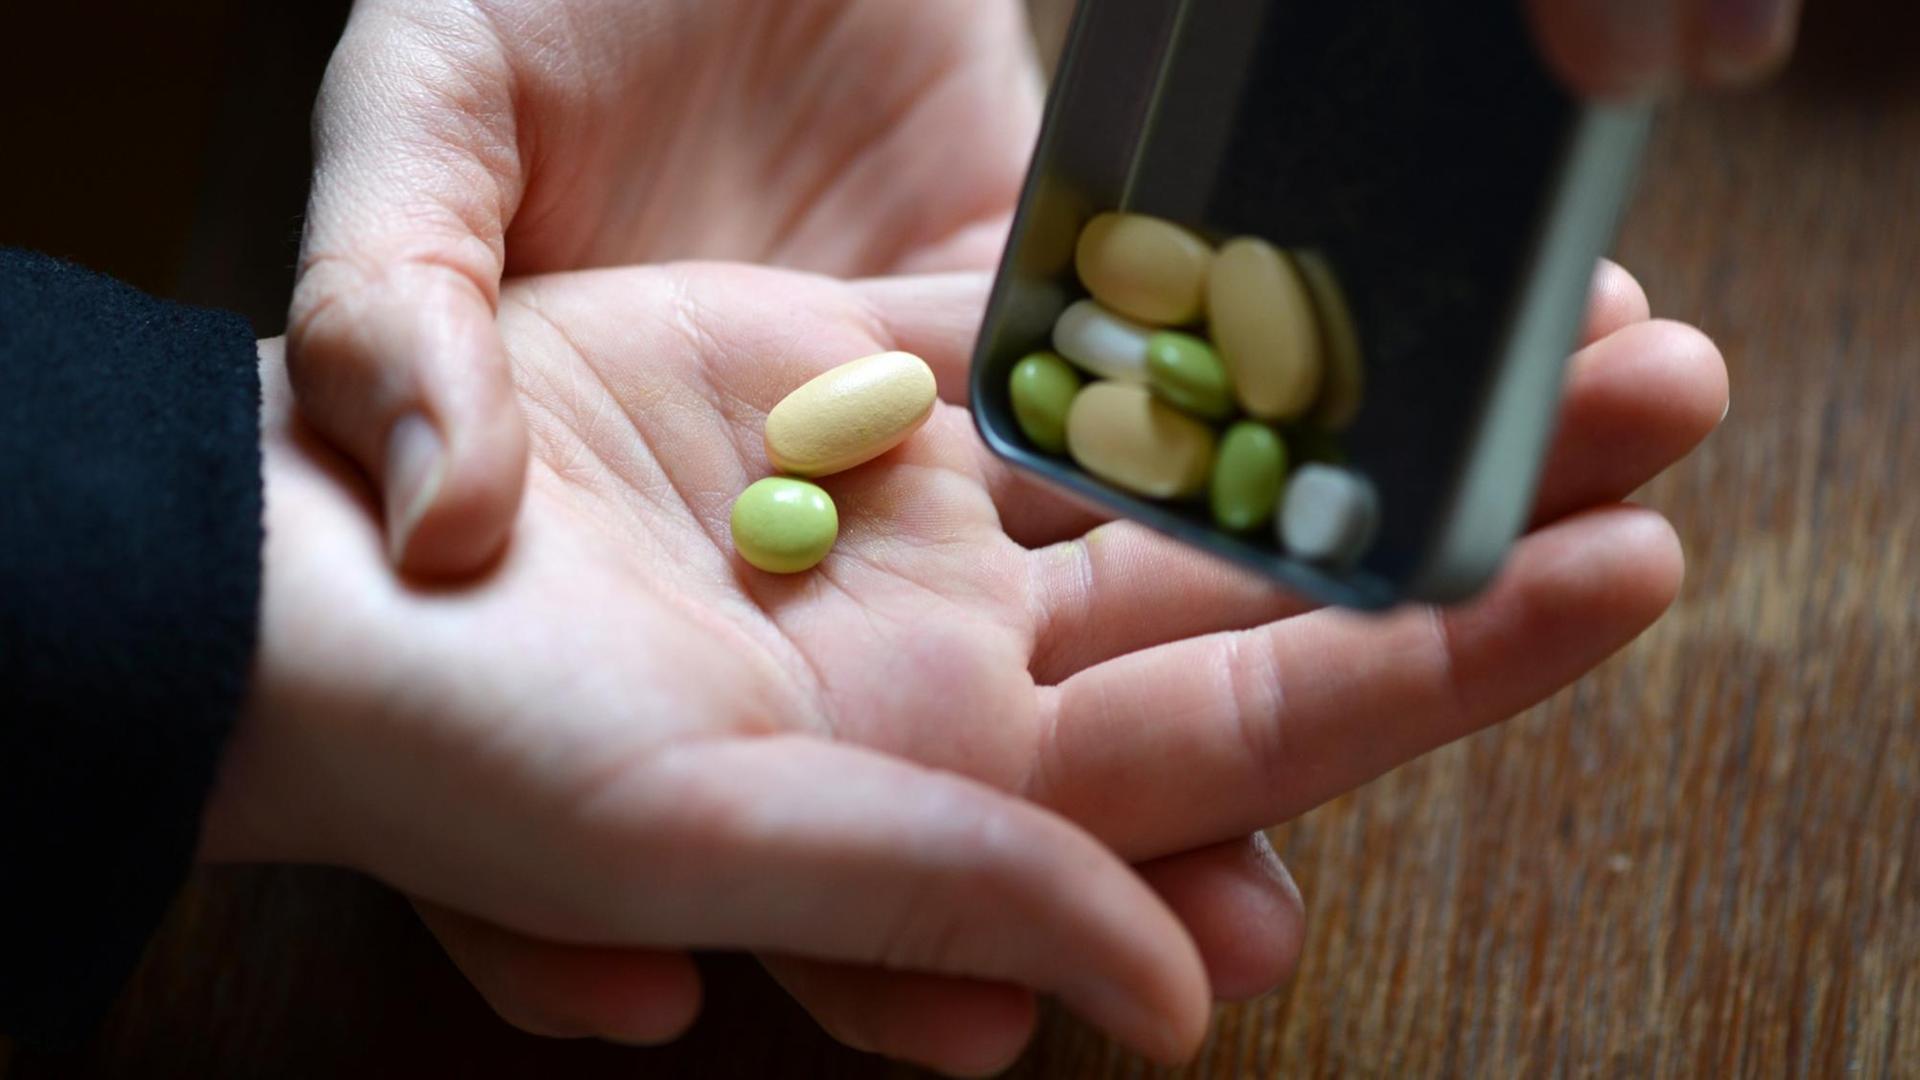 Ein Mädchen bekommt verschiedene Tabletten in die Hand geschüttet (Symbolbild)